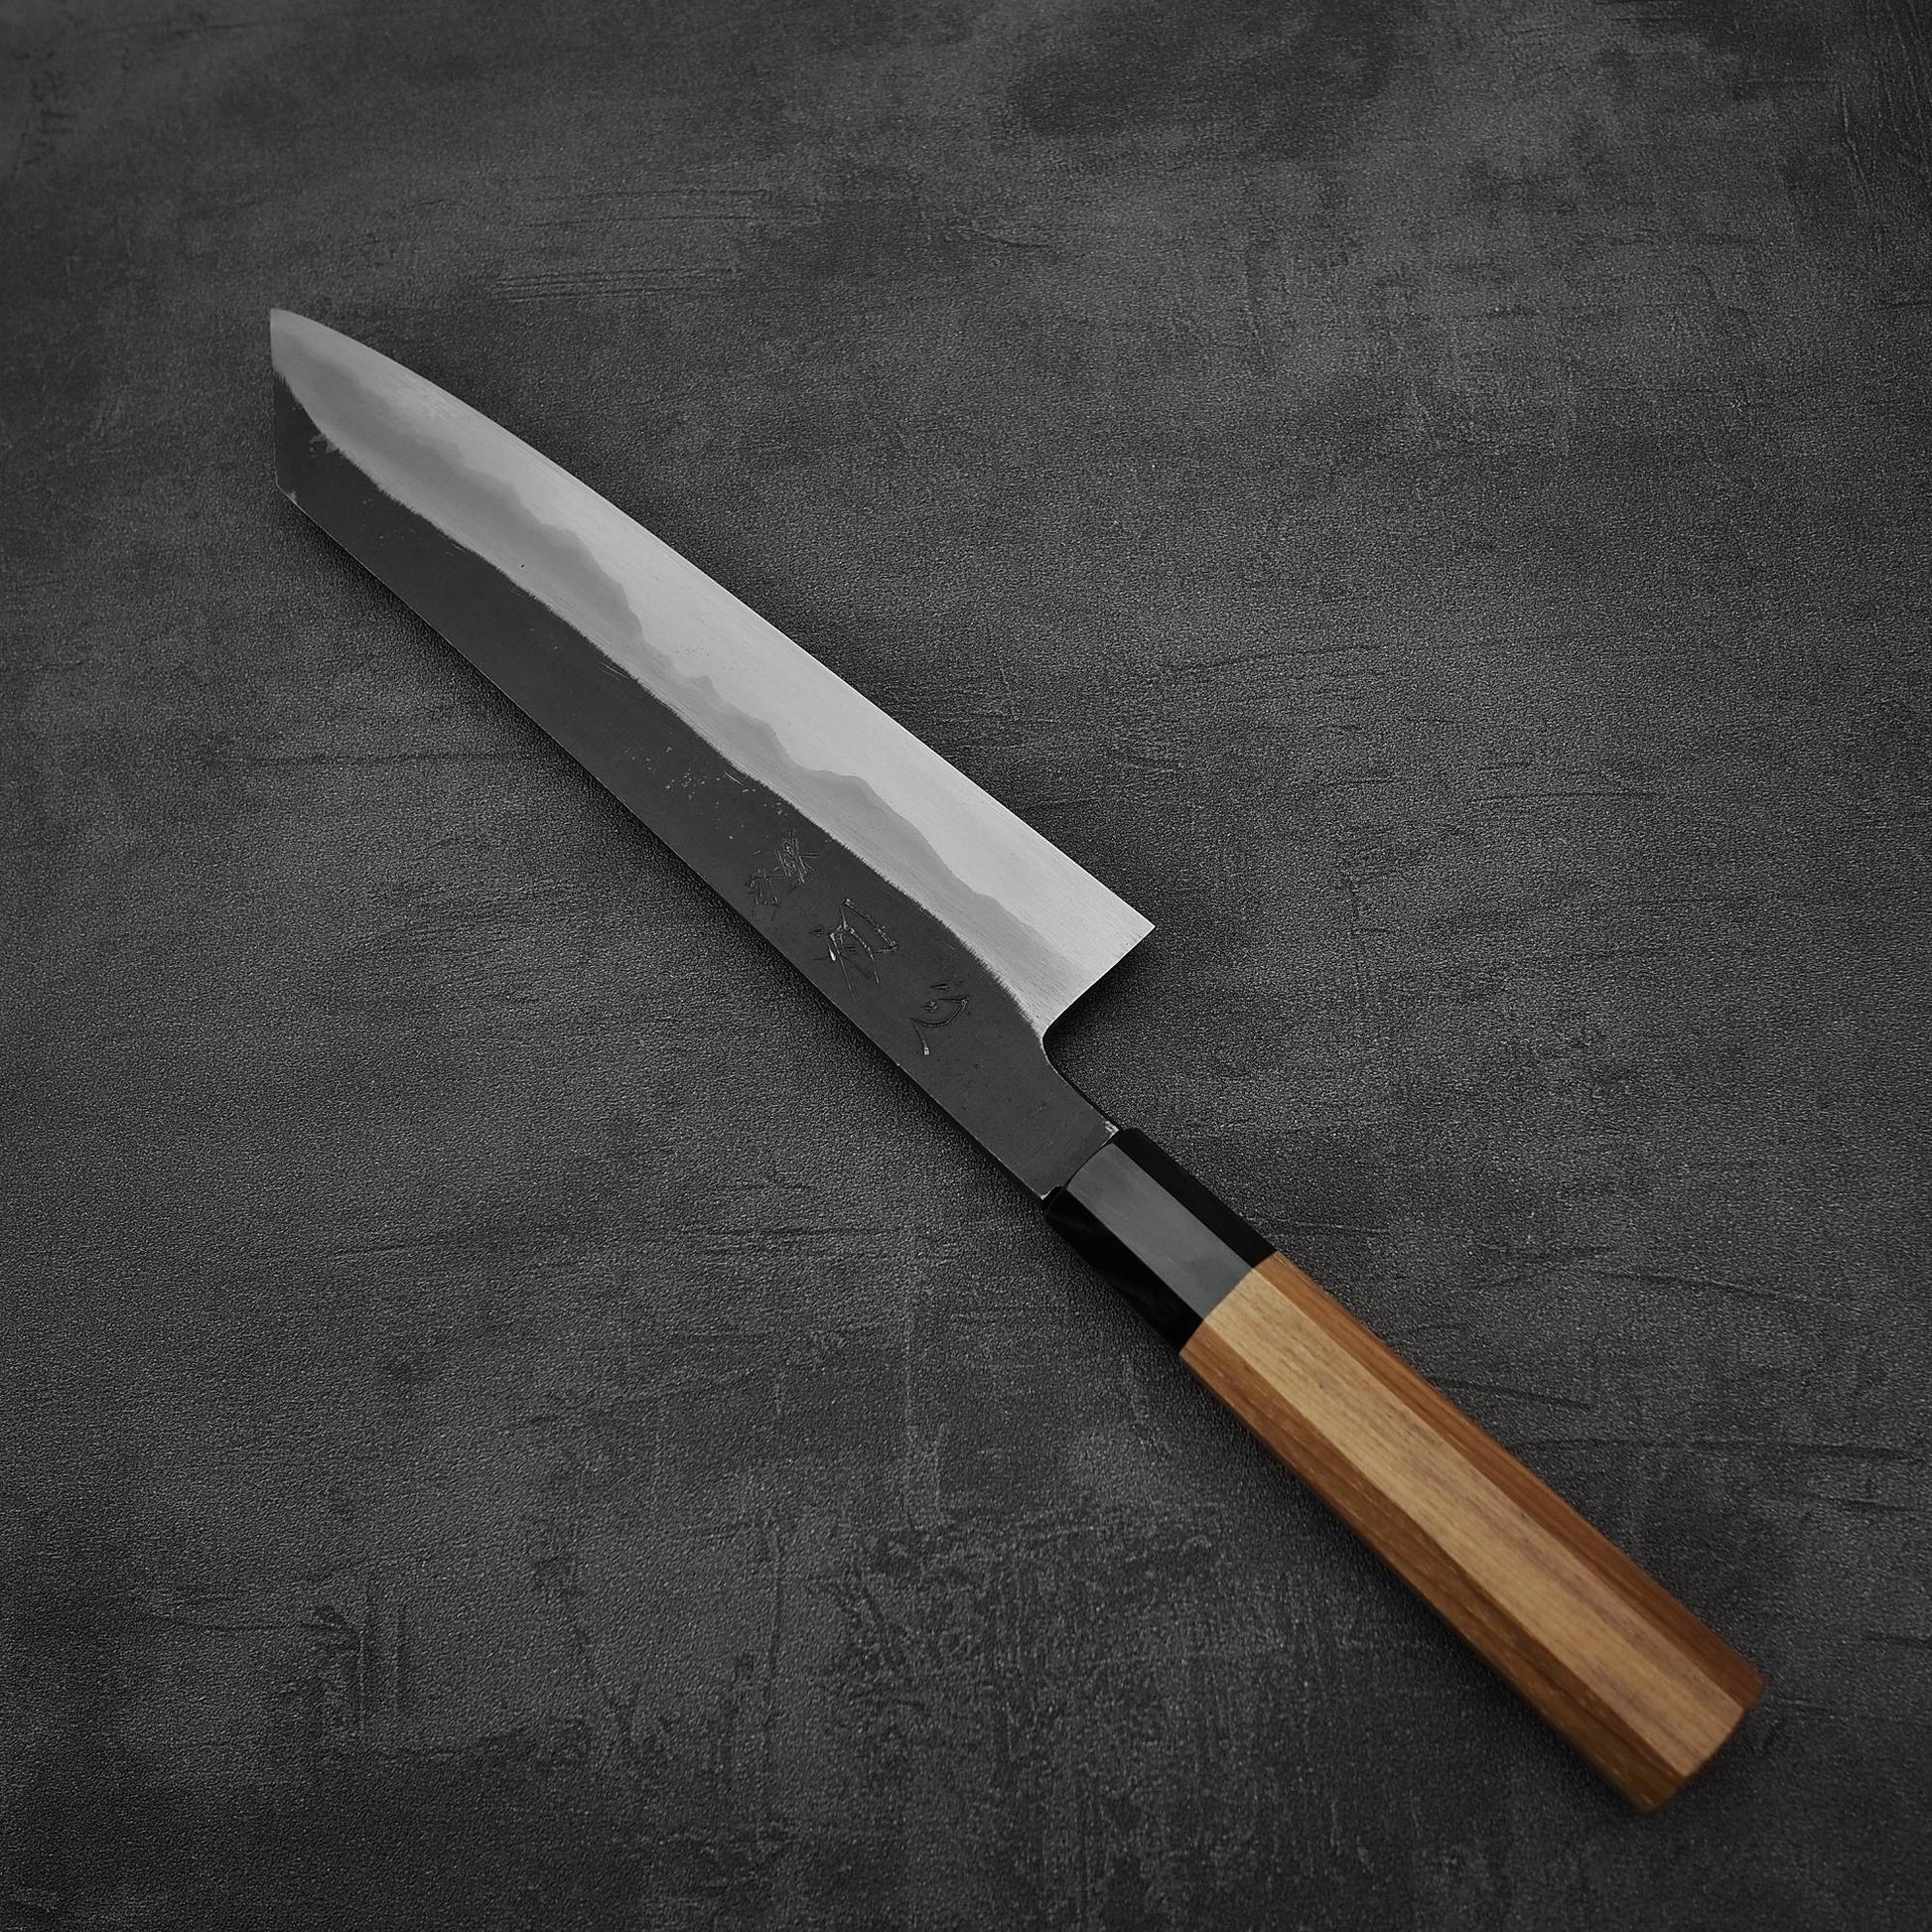 Top down view of Hatsukokoro Yoake kurouchi aogami#1 kiritsuke gyuto knife